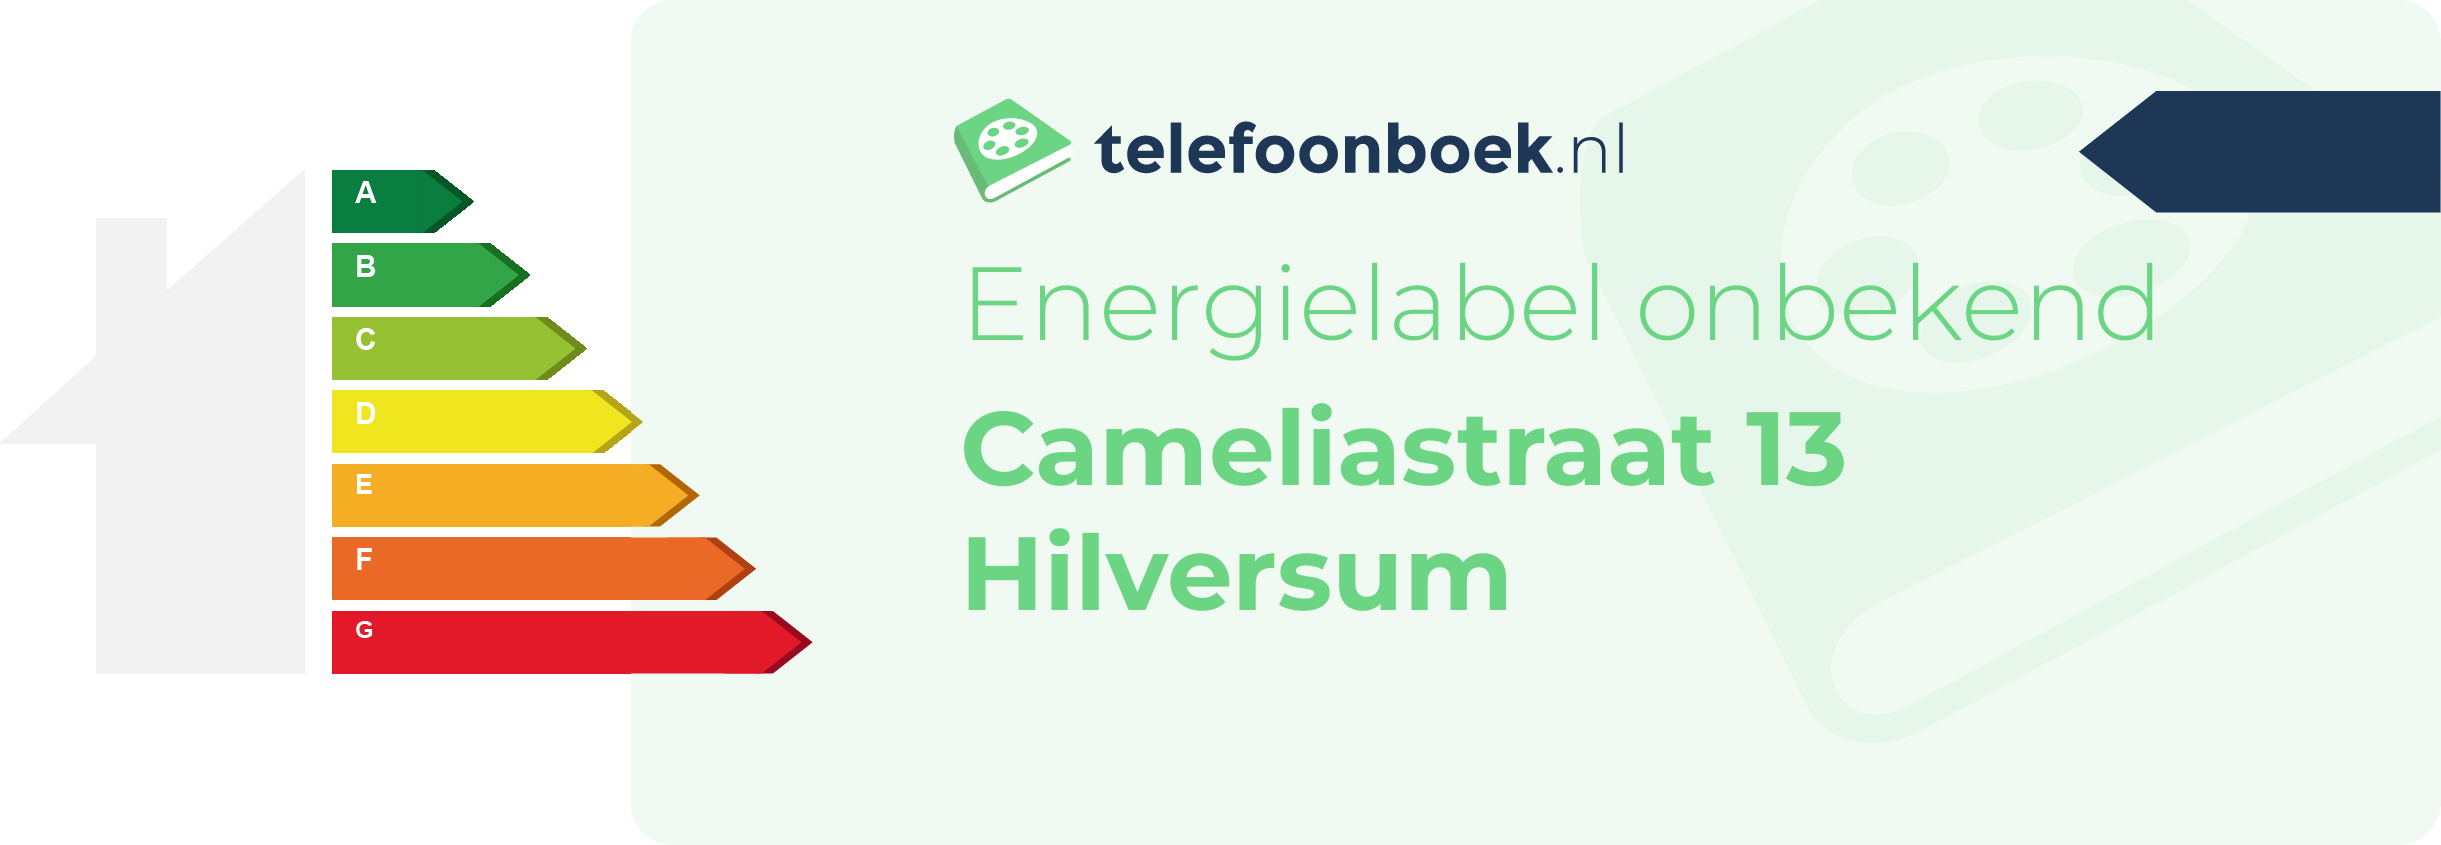 Energielabel Cameliastraat 13 Hilversum